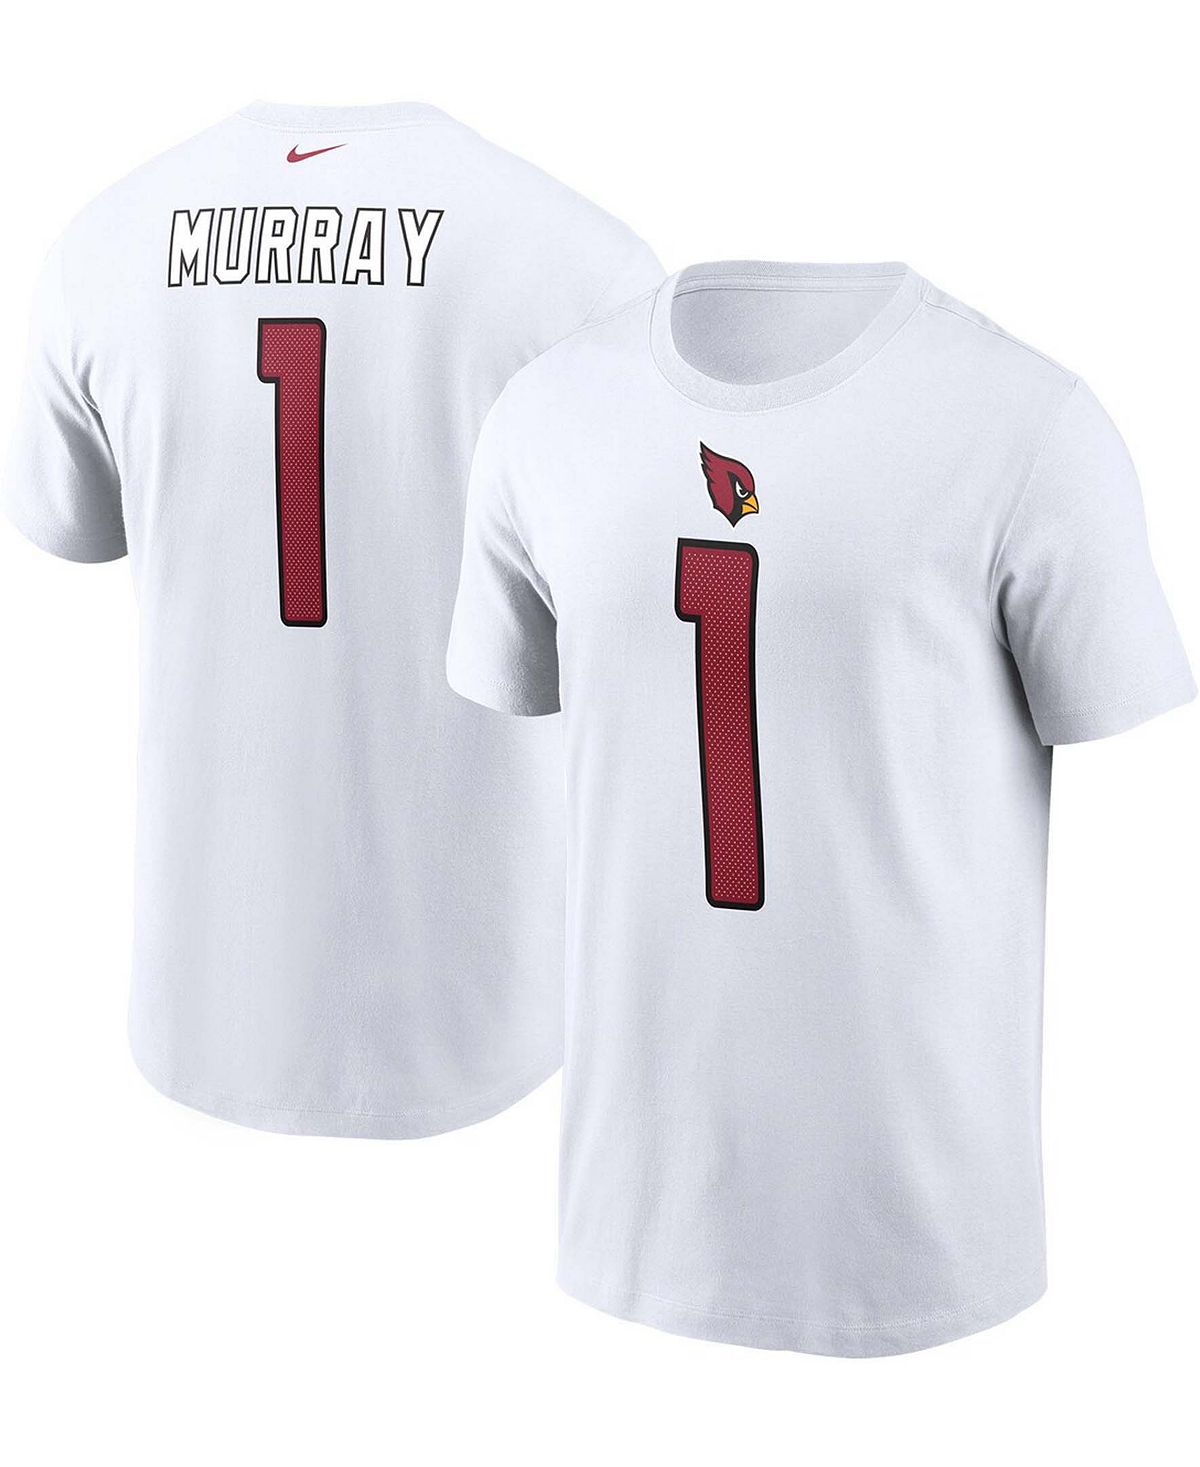 Мужская футболка Kyler Murray White Arizona Cardinals с именем и номером Nike